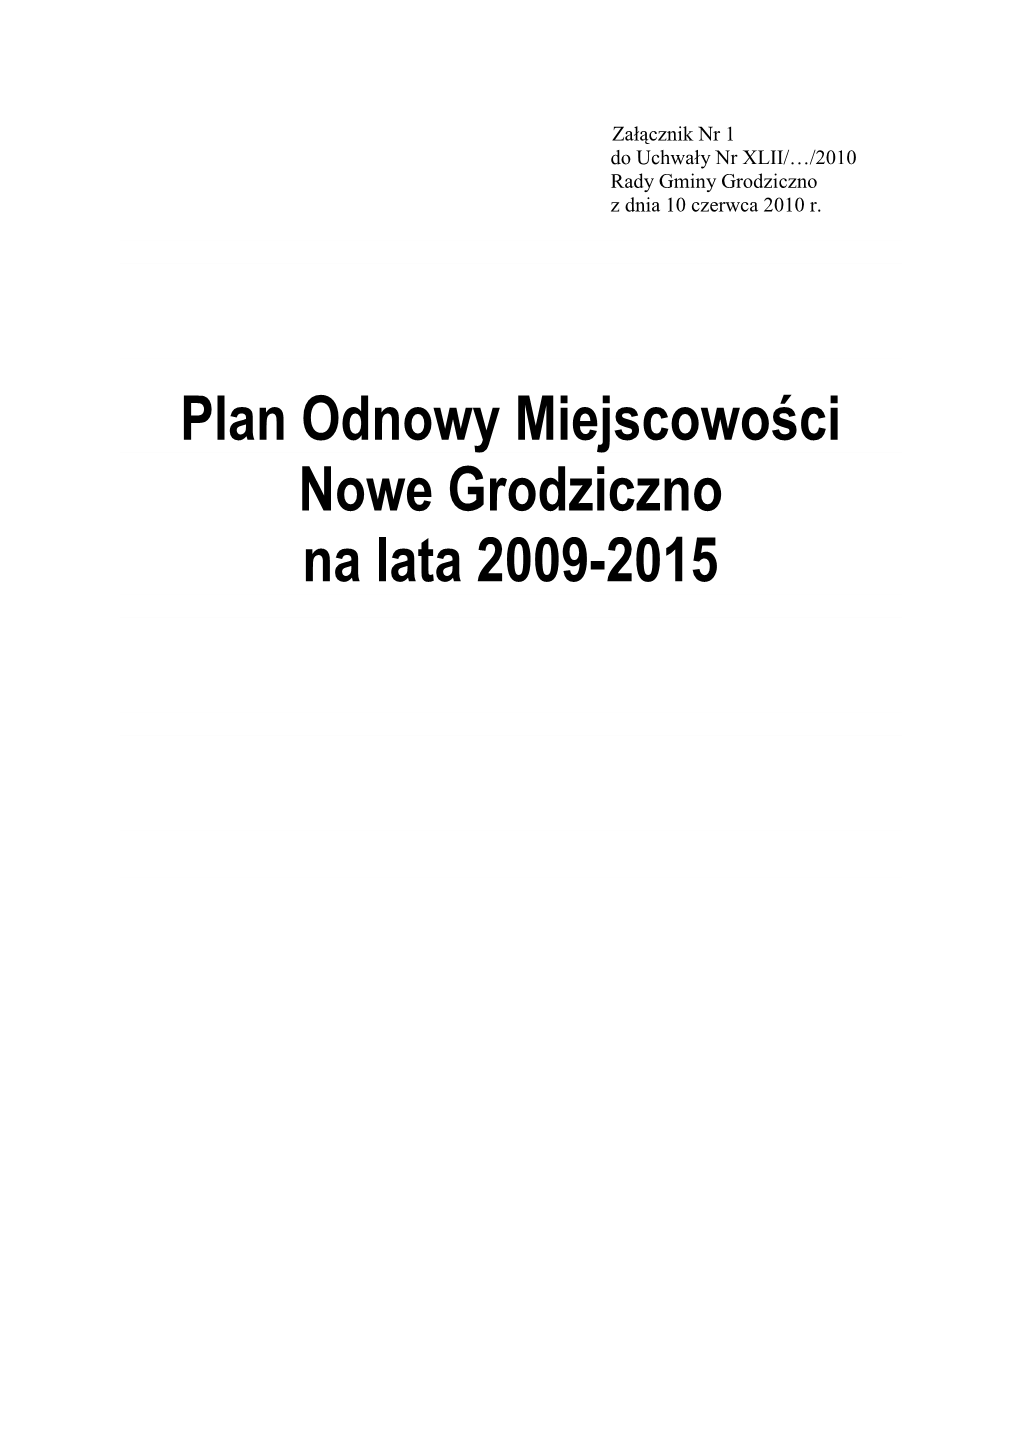 Plan Odnowy Miejscowości Nowe Grodziczno Na Lata 2009-2015